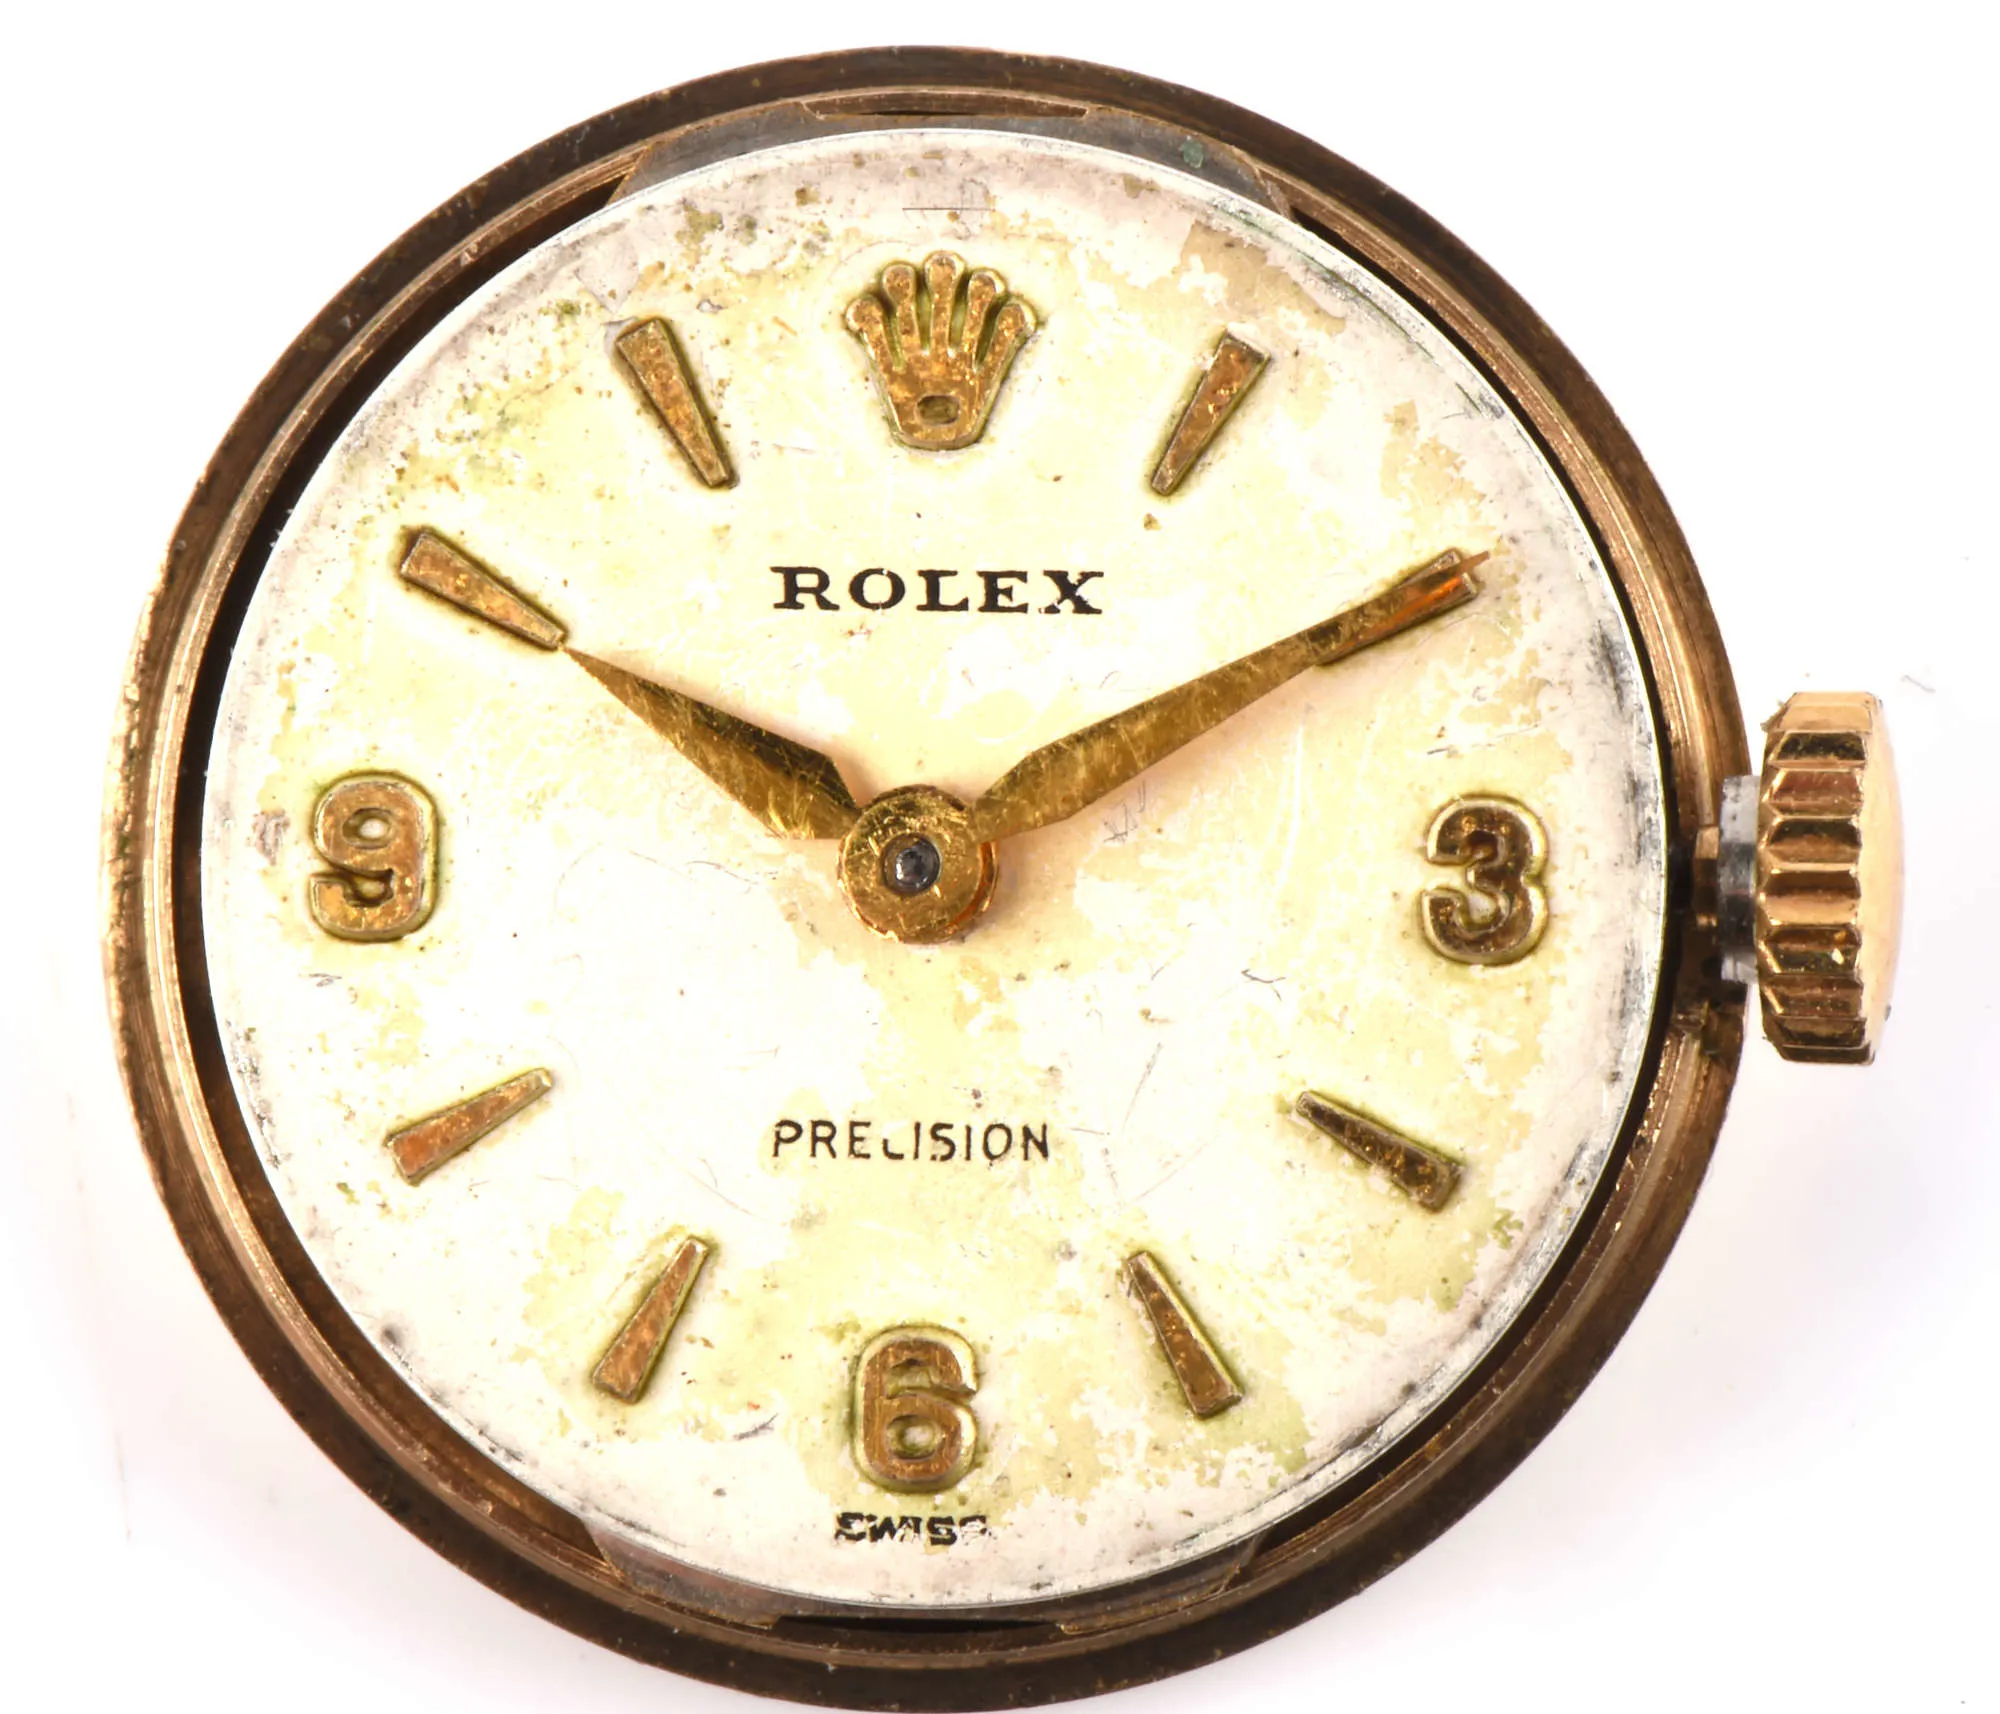 Rolex Precision 9943 Yellow gold